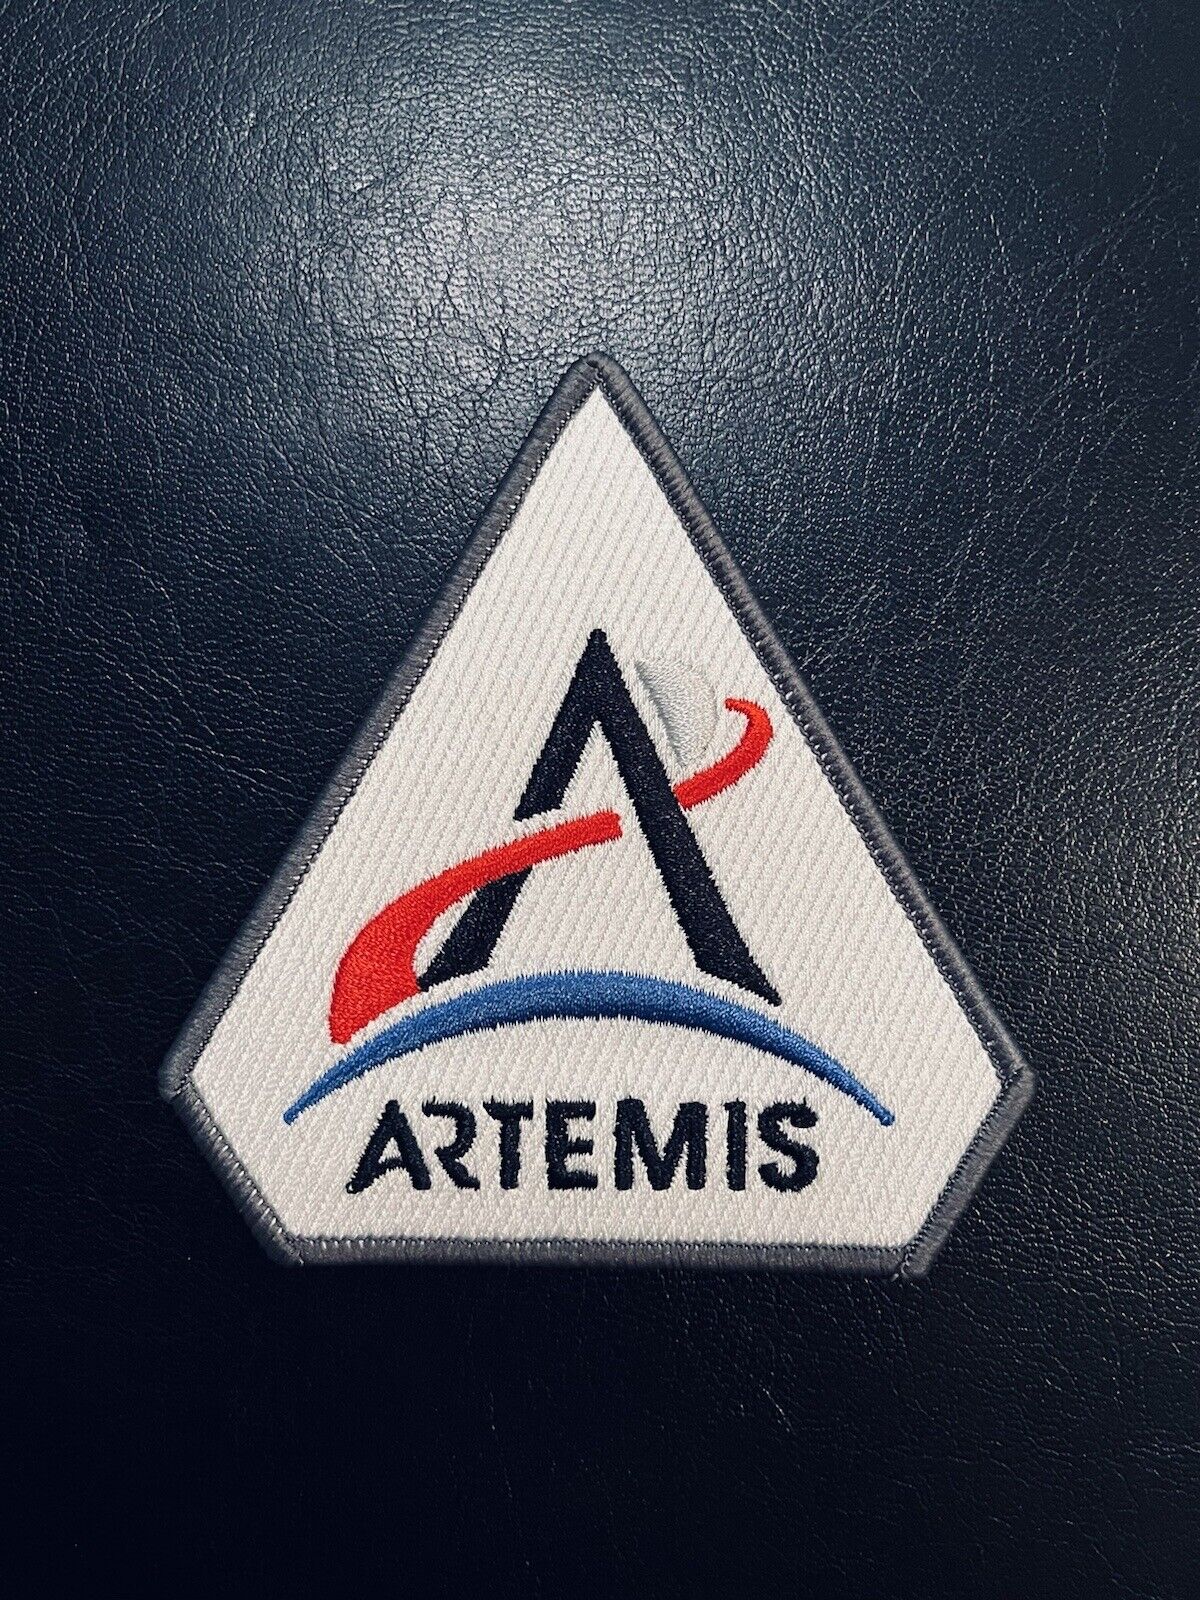 Artemis Program Patch 